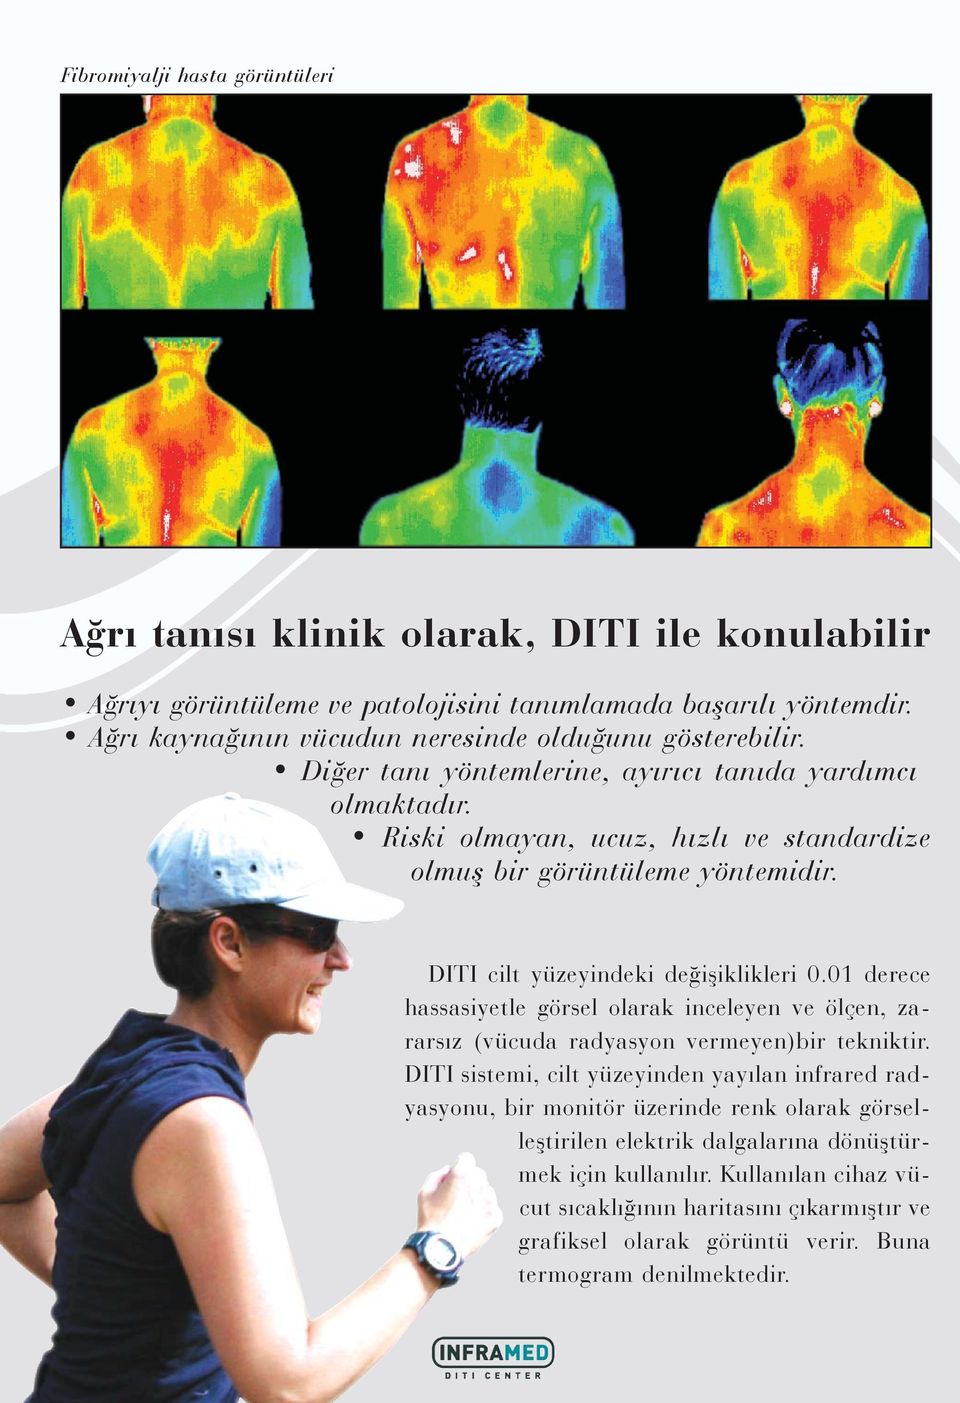 DITI cilt yüzeyindeki deðiþiklikleri 0.01 derece hassasiyetle görsel olarak inceleyen ve ölçen, zararsýz (vücuda radyasyon vermeyen)bir tekniktir.